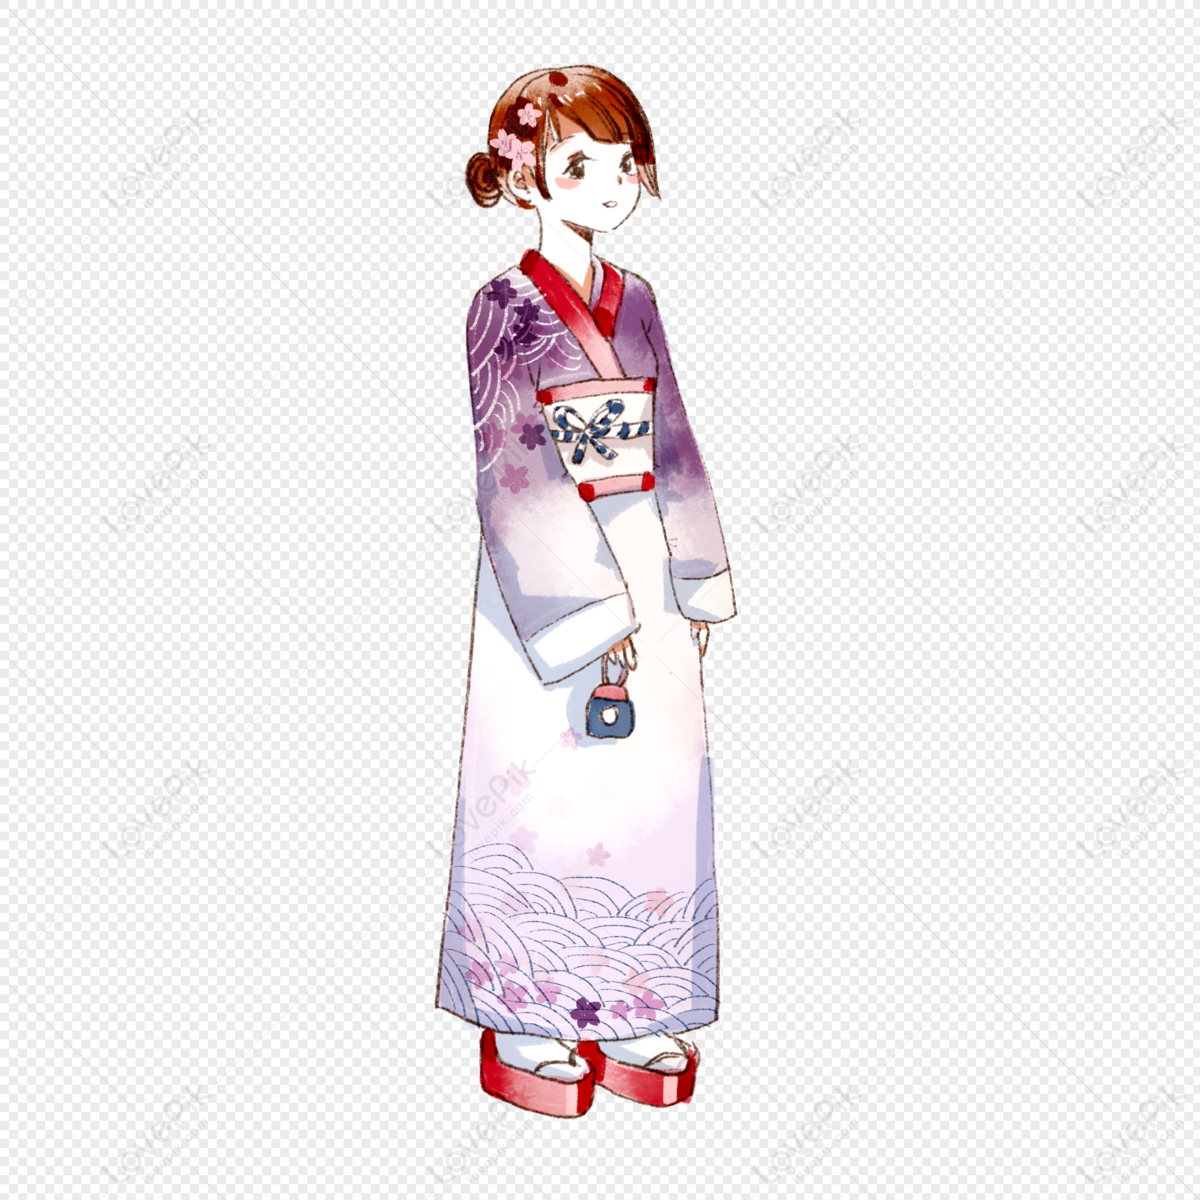 Hình ảnh Cô Gái Kimono Dễ Thương PNG Miễn Phí Tải Về - Lovepik